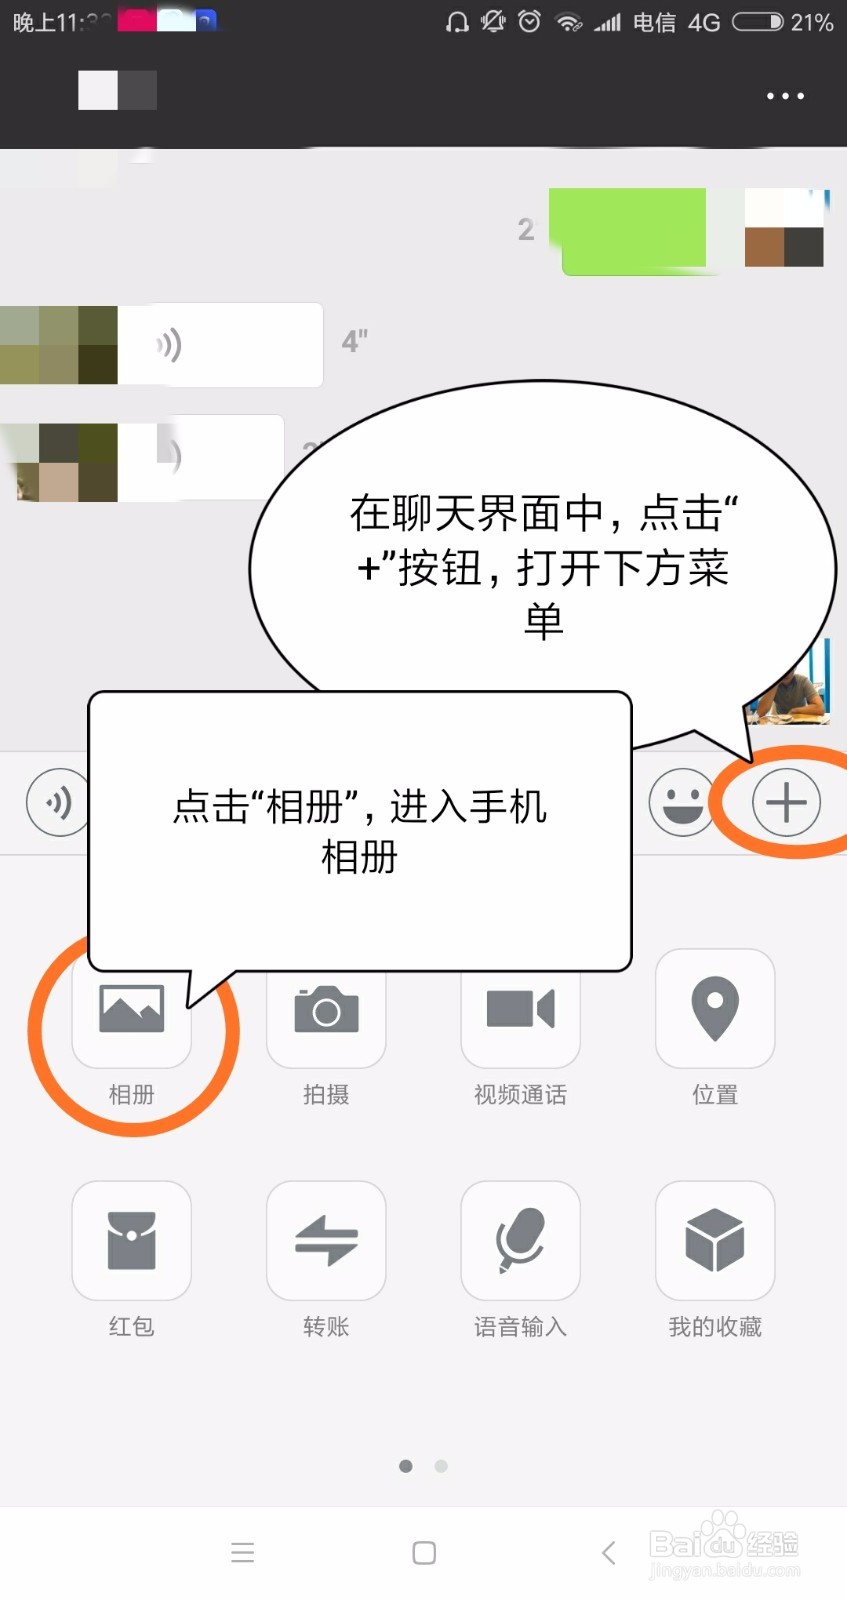 <b>用微信QQ给朋友发照片不清楚怎么办</b>